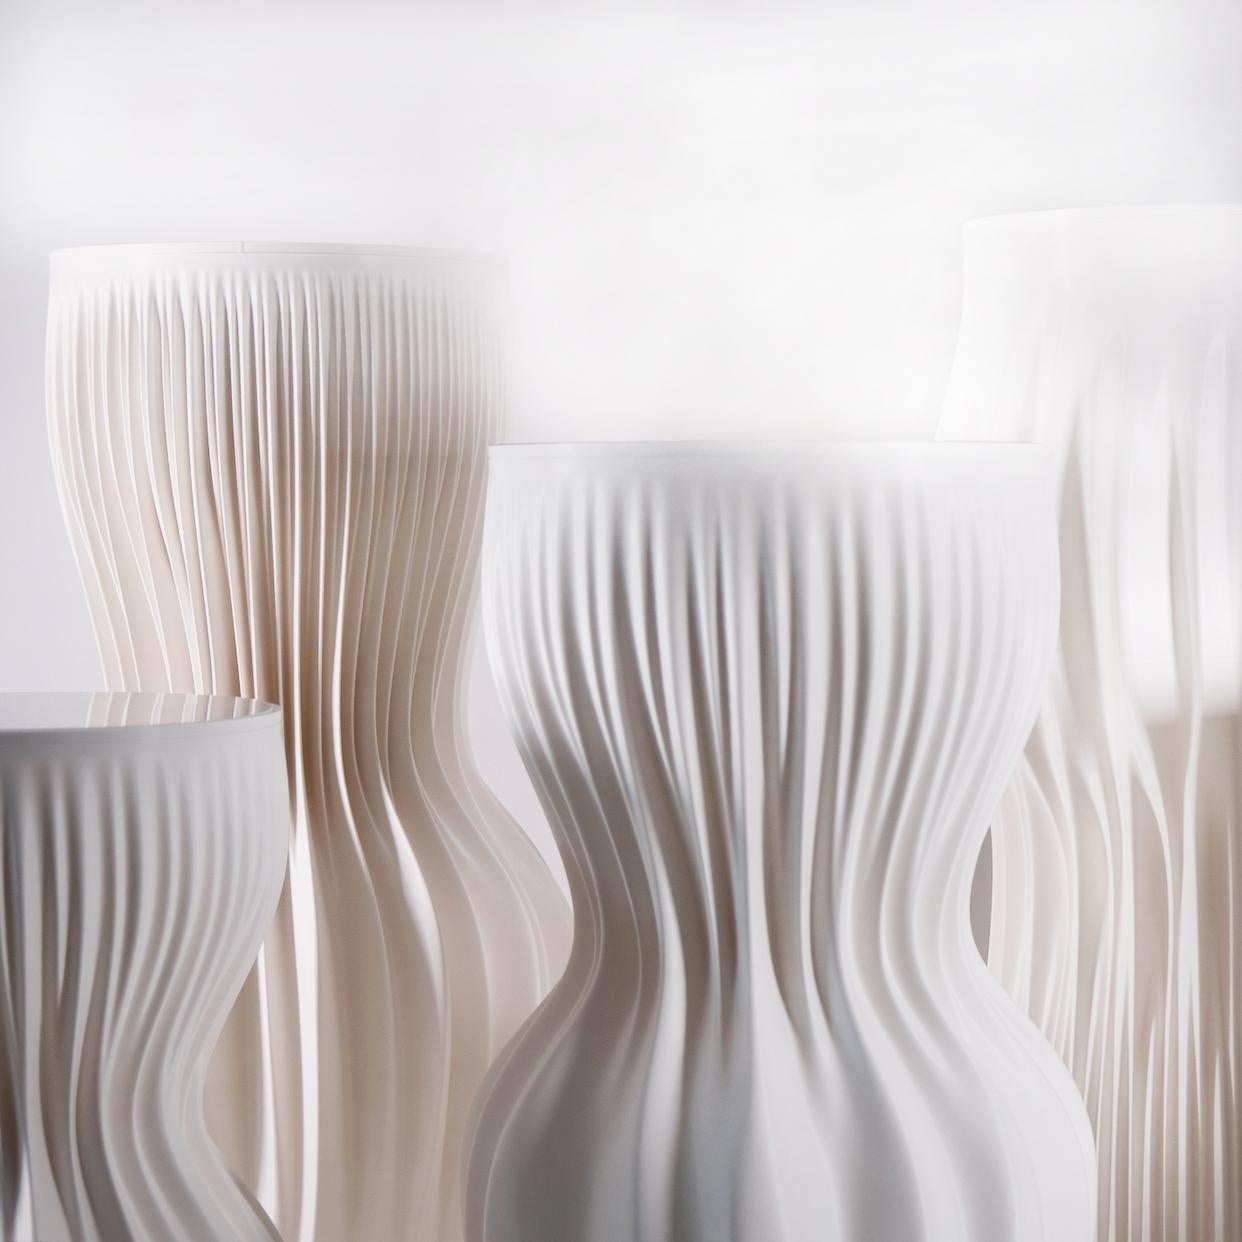 Die Lamella Pedestals bestehen aus vollständig 3D-gedruckten Sockeln, die sich in Form, Größe und Zweck unterscheiden. Dieses Angebot bezieht sich auf den hohen Lamellensockel. Die Lamella-Serie ist Teil der ständigen Sammlung des MAK (Museum für